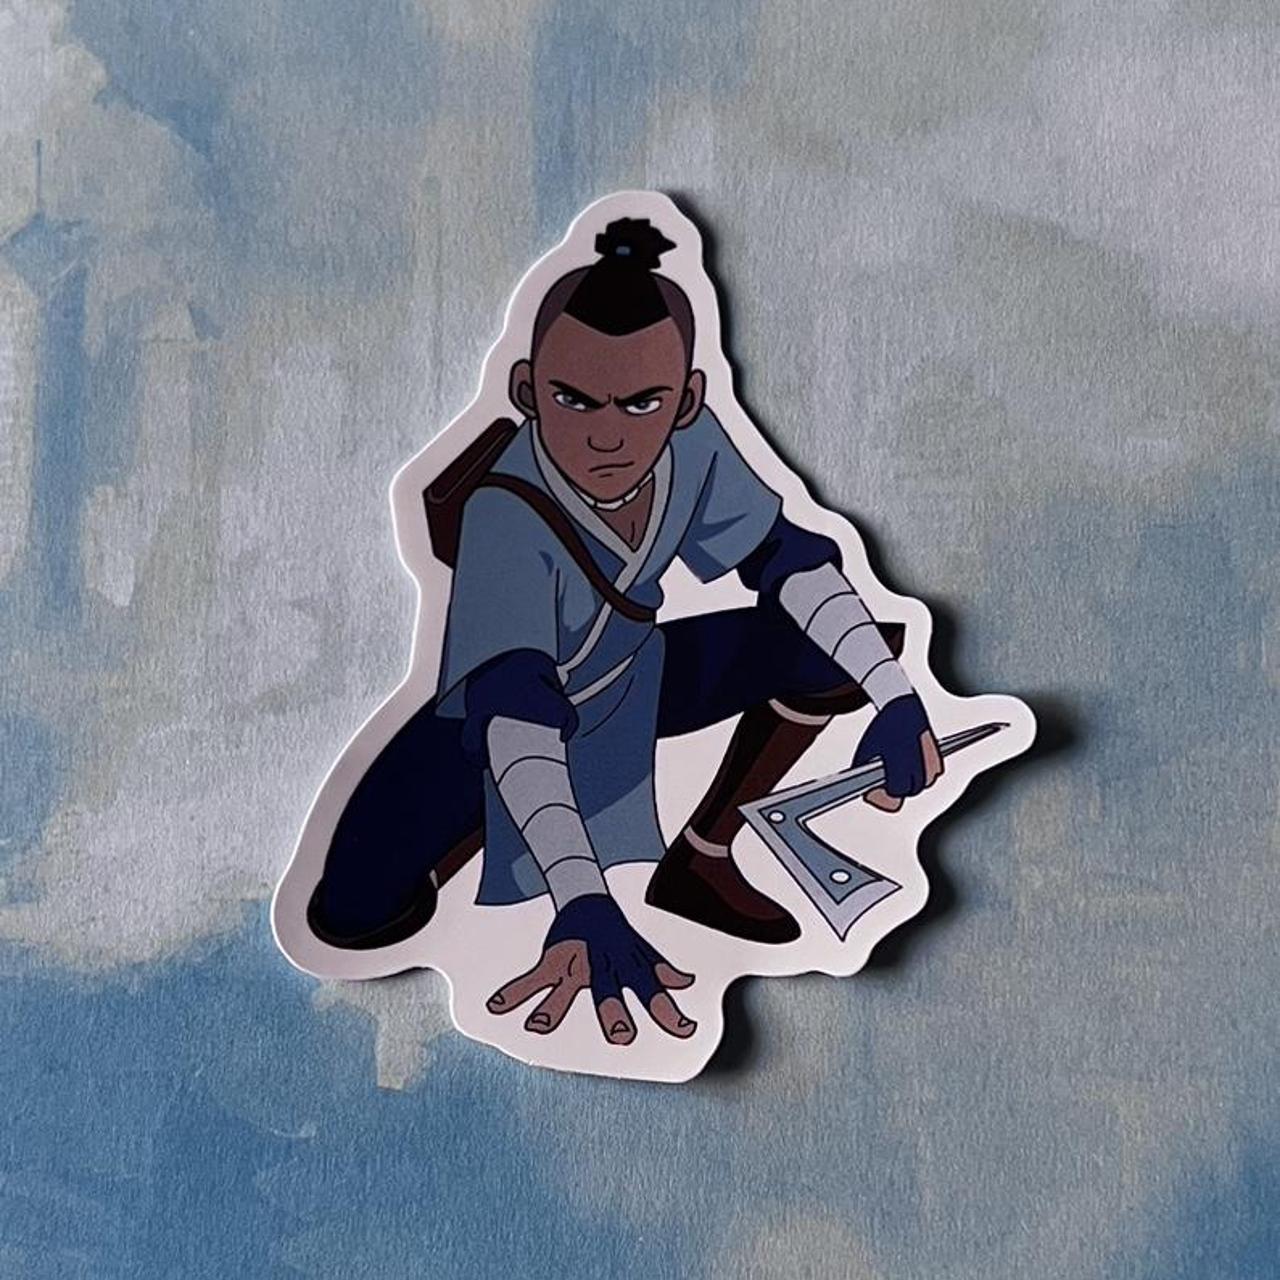 Avatar the Last Airbender sticker! 🔵🟤🔴⚪️ #matte - Depop